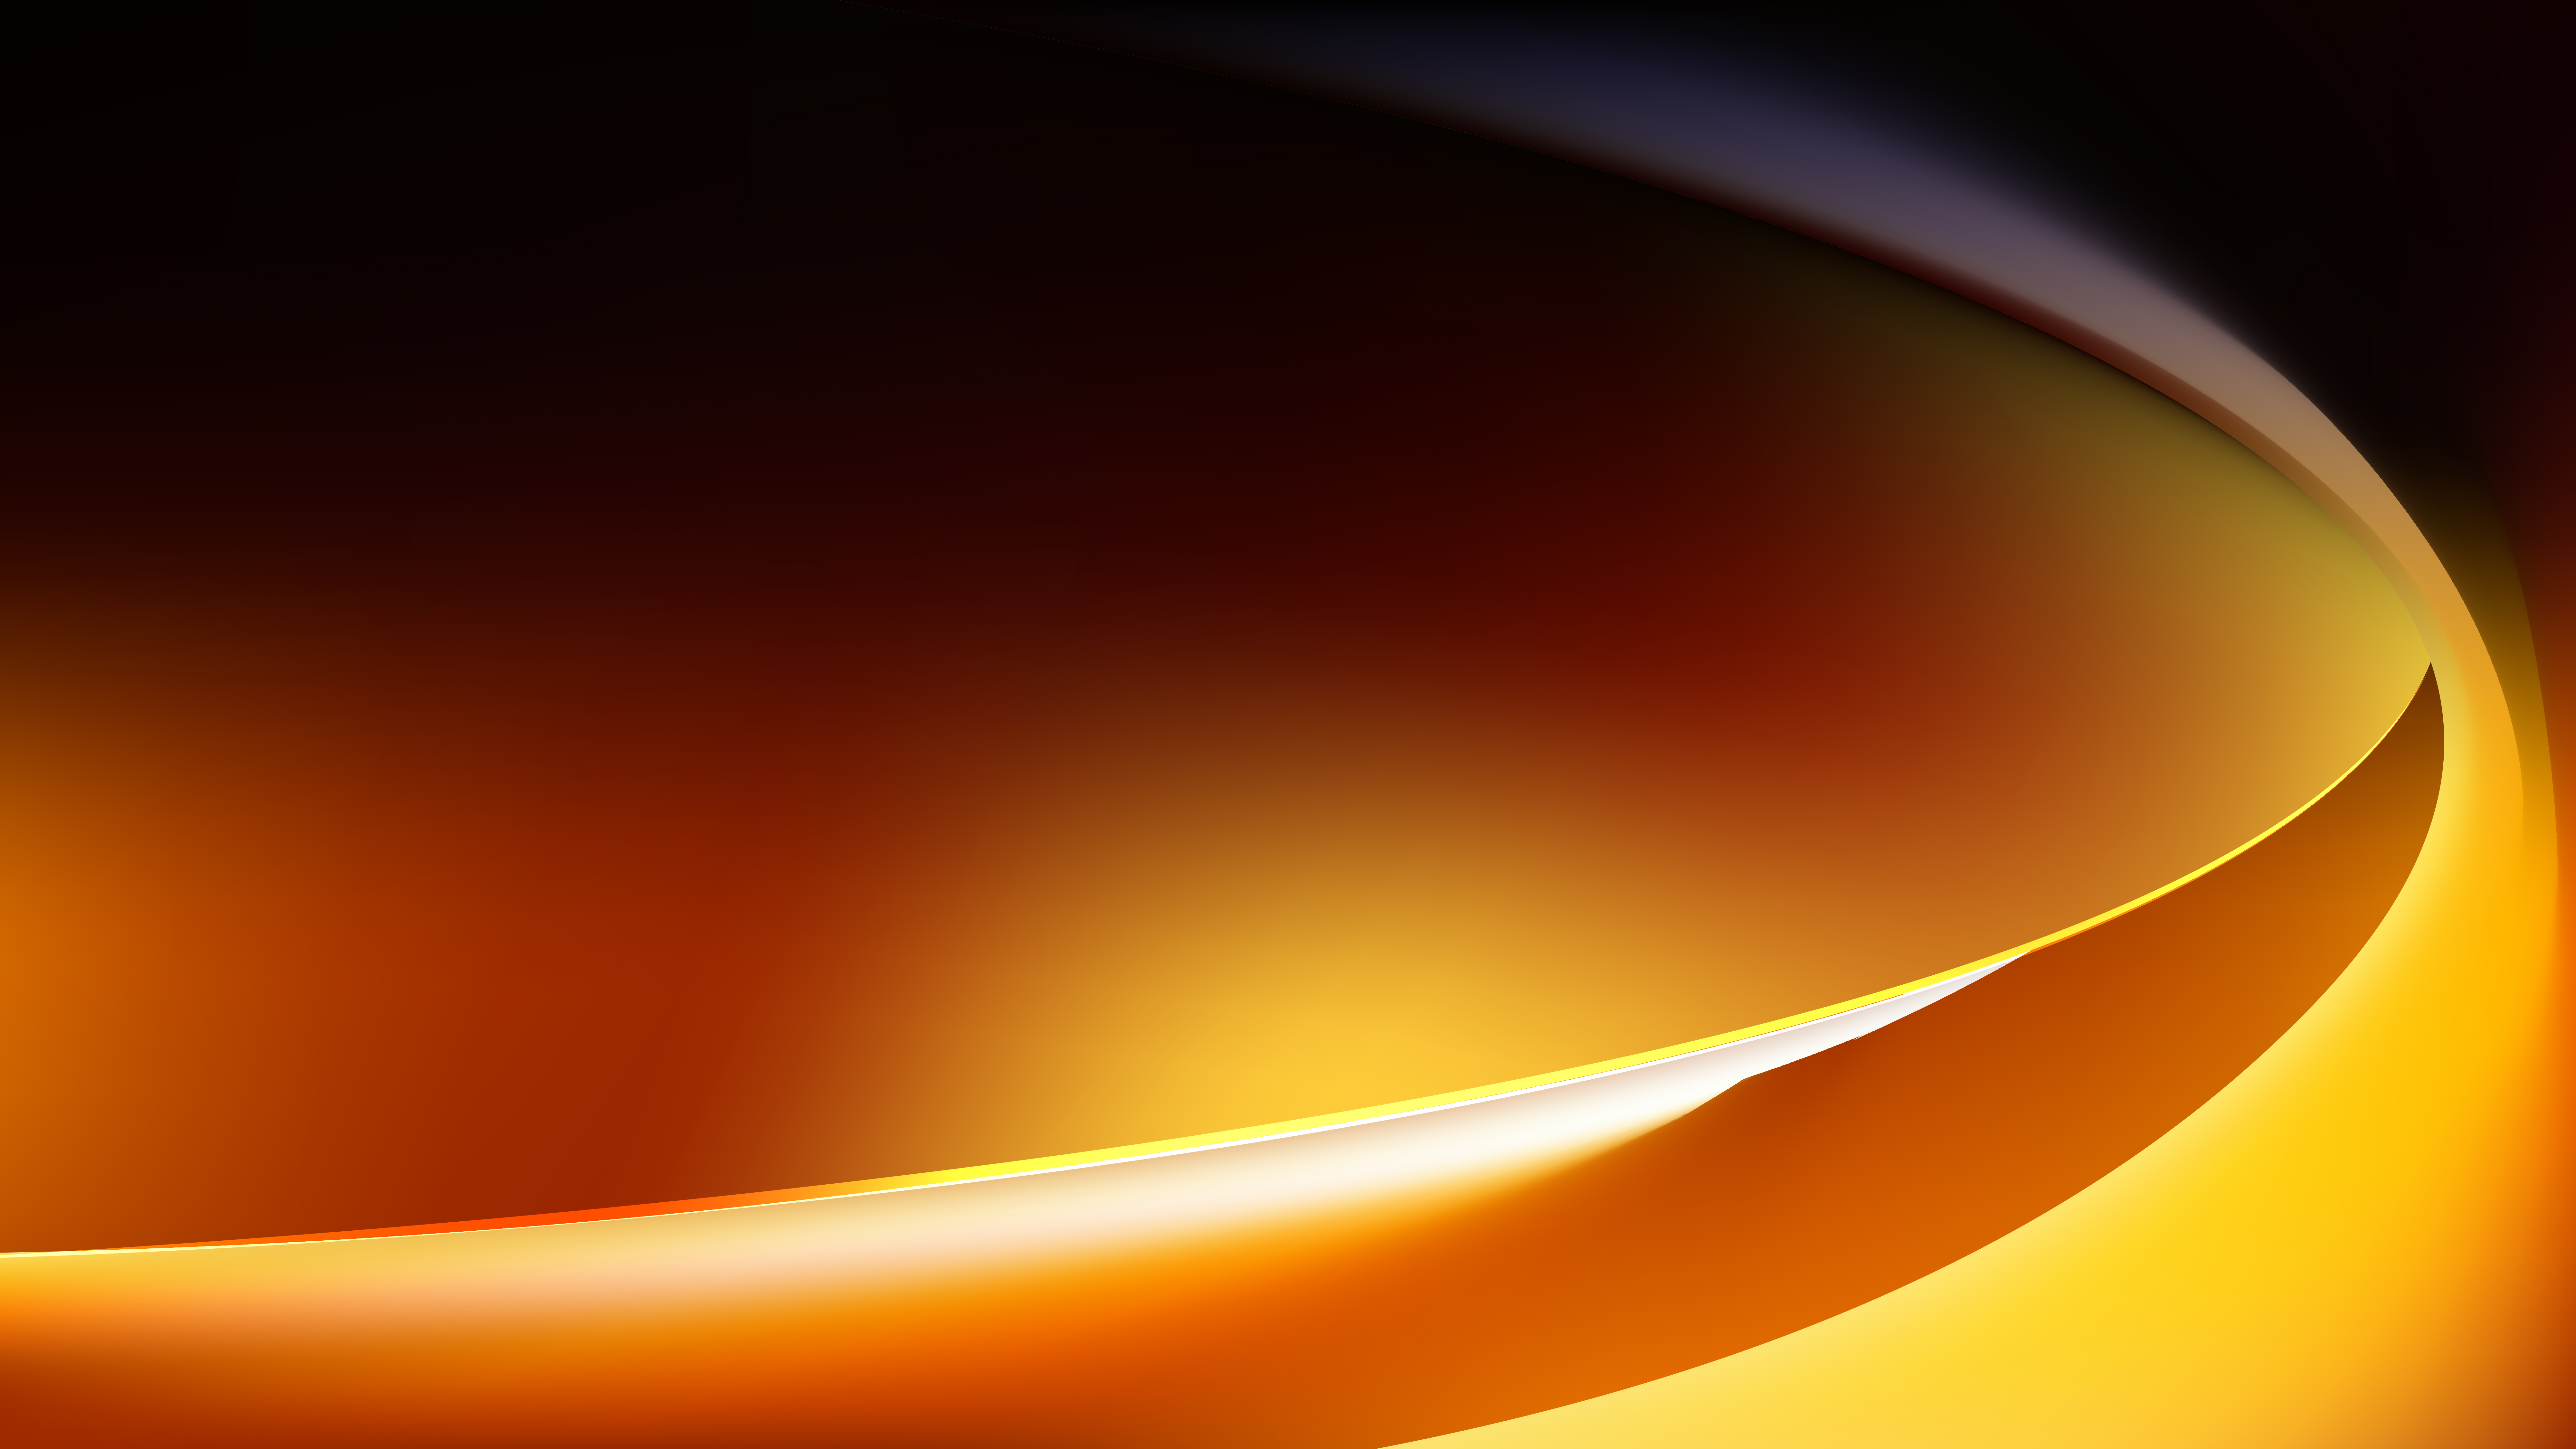 Vector sóng đen cam sáng trừu tượng miễn phí: Bộ sưu tập vector sóng đen cam sáng trừu tượng miễn phí mang lại cảm giác rất sáng tạo và năng động trong thiết kế. Sự kết hợp giữa màu cam và đen tạo ra một trải nghiệm thú vị và đưa bạn đến những cảm hứng mới mẻ nhất.